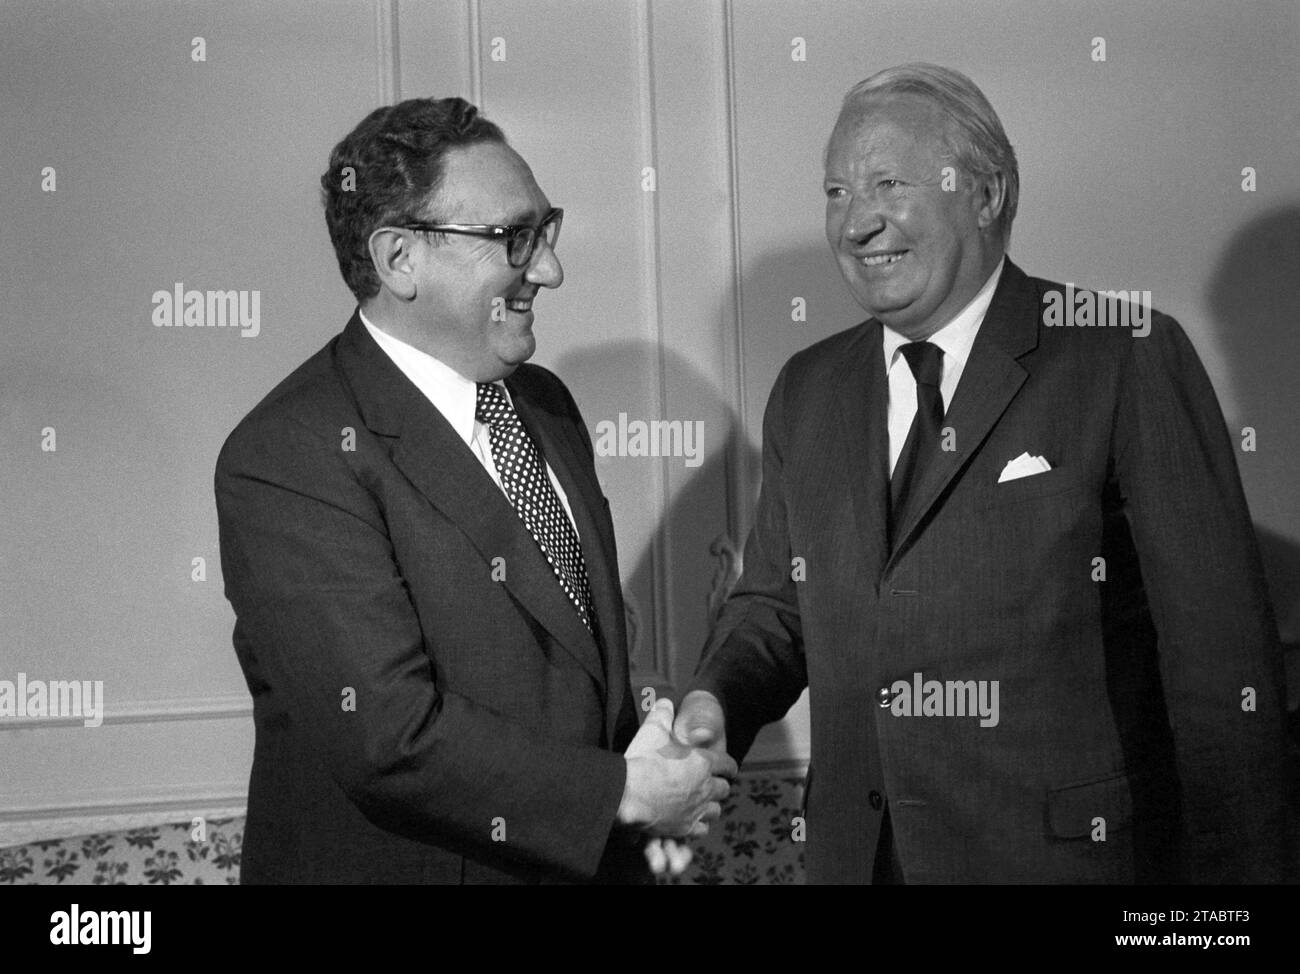 Aktenfoto vom 7/1974 von Dr. Henry Kissinger, US-Außenminister, trifft auf Edward Heath, Oppositionsführer, in Claridges. Zuvor hatte er Gespräche mit dem Premierminister und hochrangigen Regierungsmitgliedern. Kissinger, der US-Außenminister, der die Außenpolitik unter den ehemaligen Präsidenten Richard Nixon und Gerald Ford beherrschte, ist im Alter von 100 Jahren gestorben, sagte seine Beratungsfirma Kissinger Associates. Ausgabedatum: Donnerstag, 30. November 2023. Stockfoto